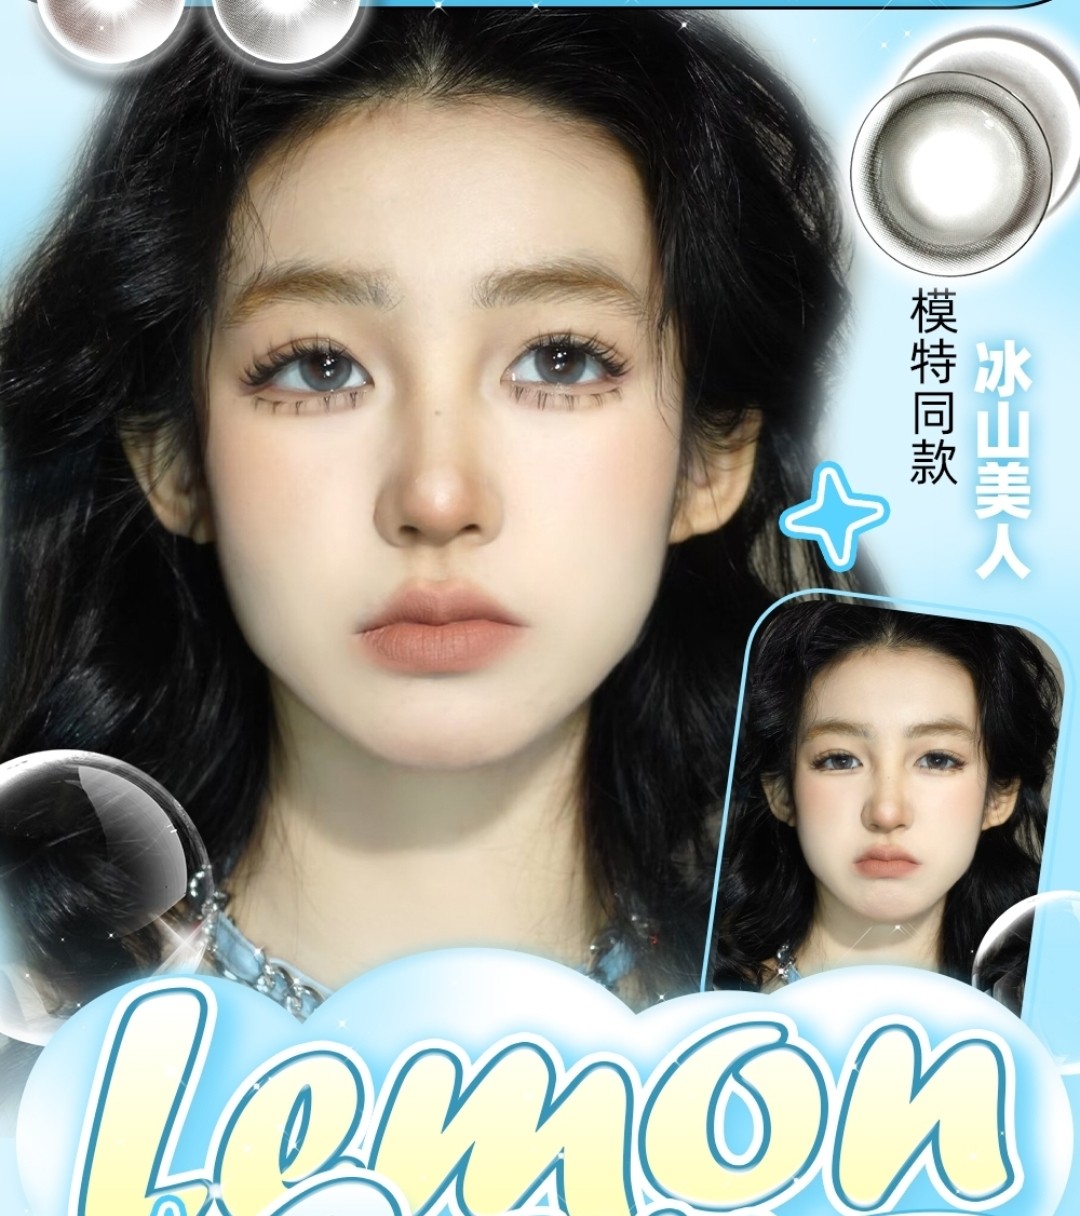 【半年抛上新】Lemoncon解锁美少女泪眼婆娑新技能 #冰晶琥珀